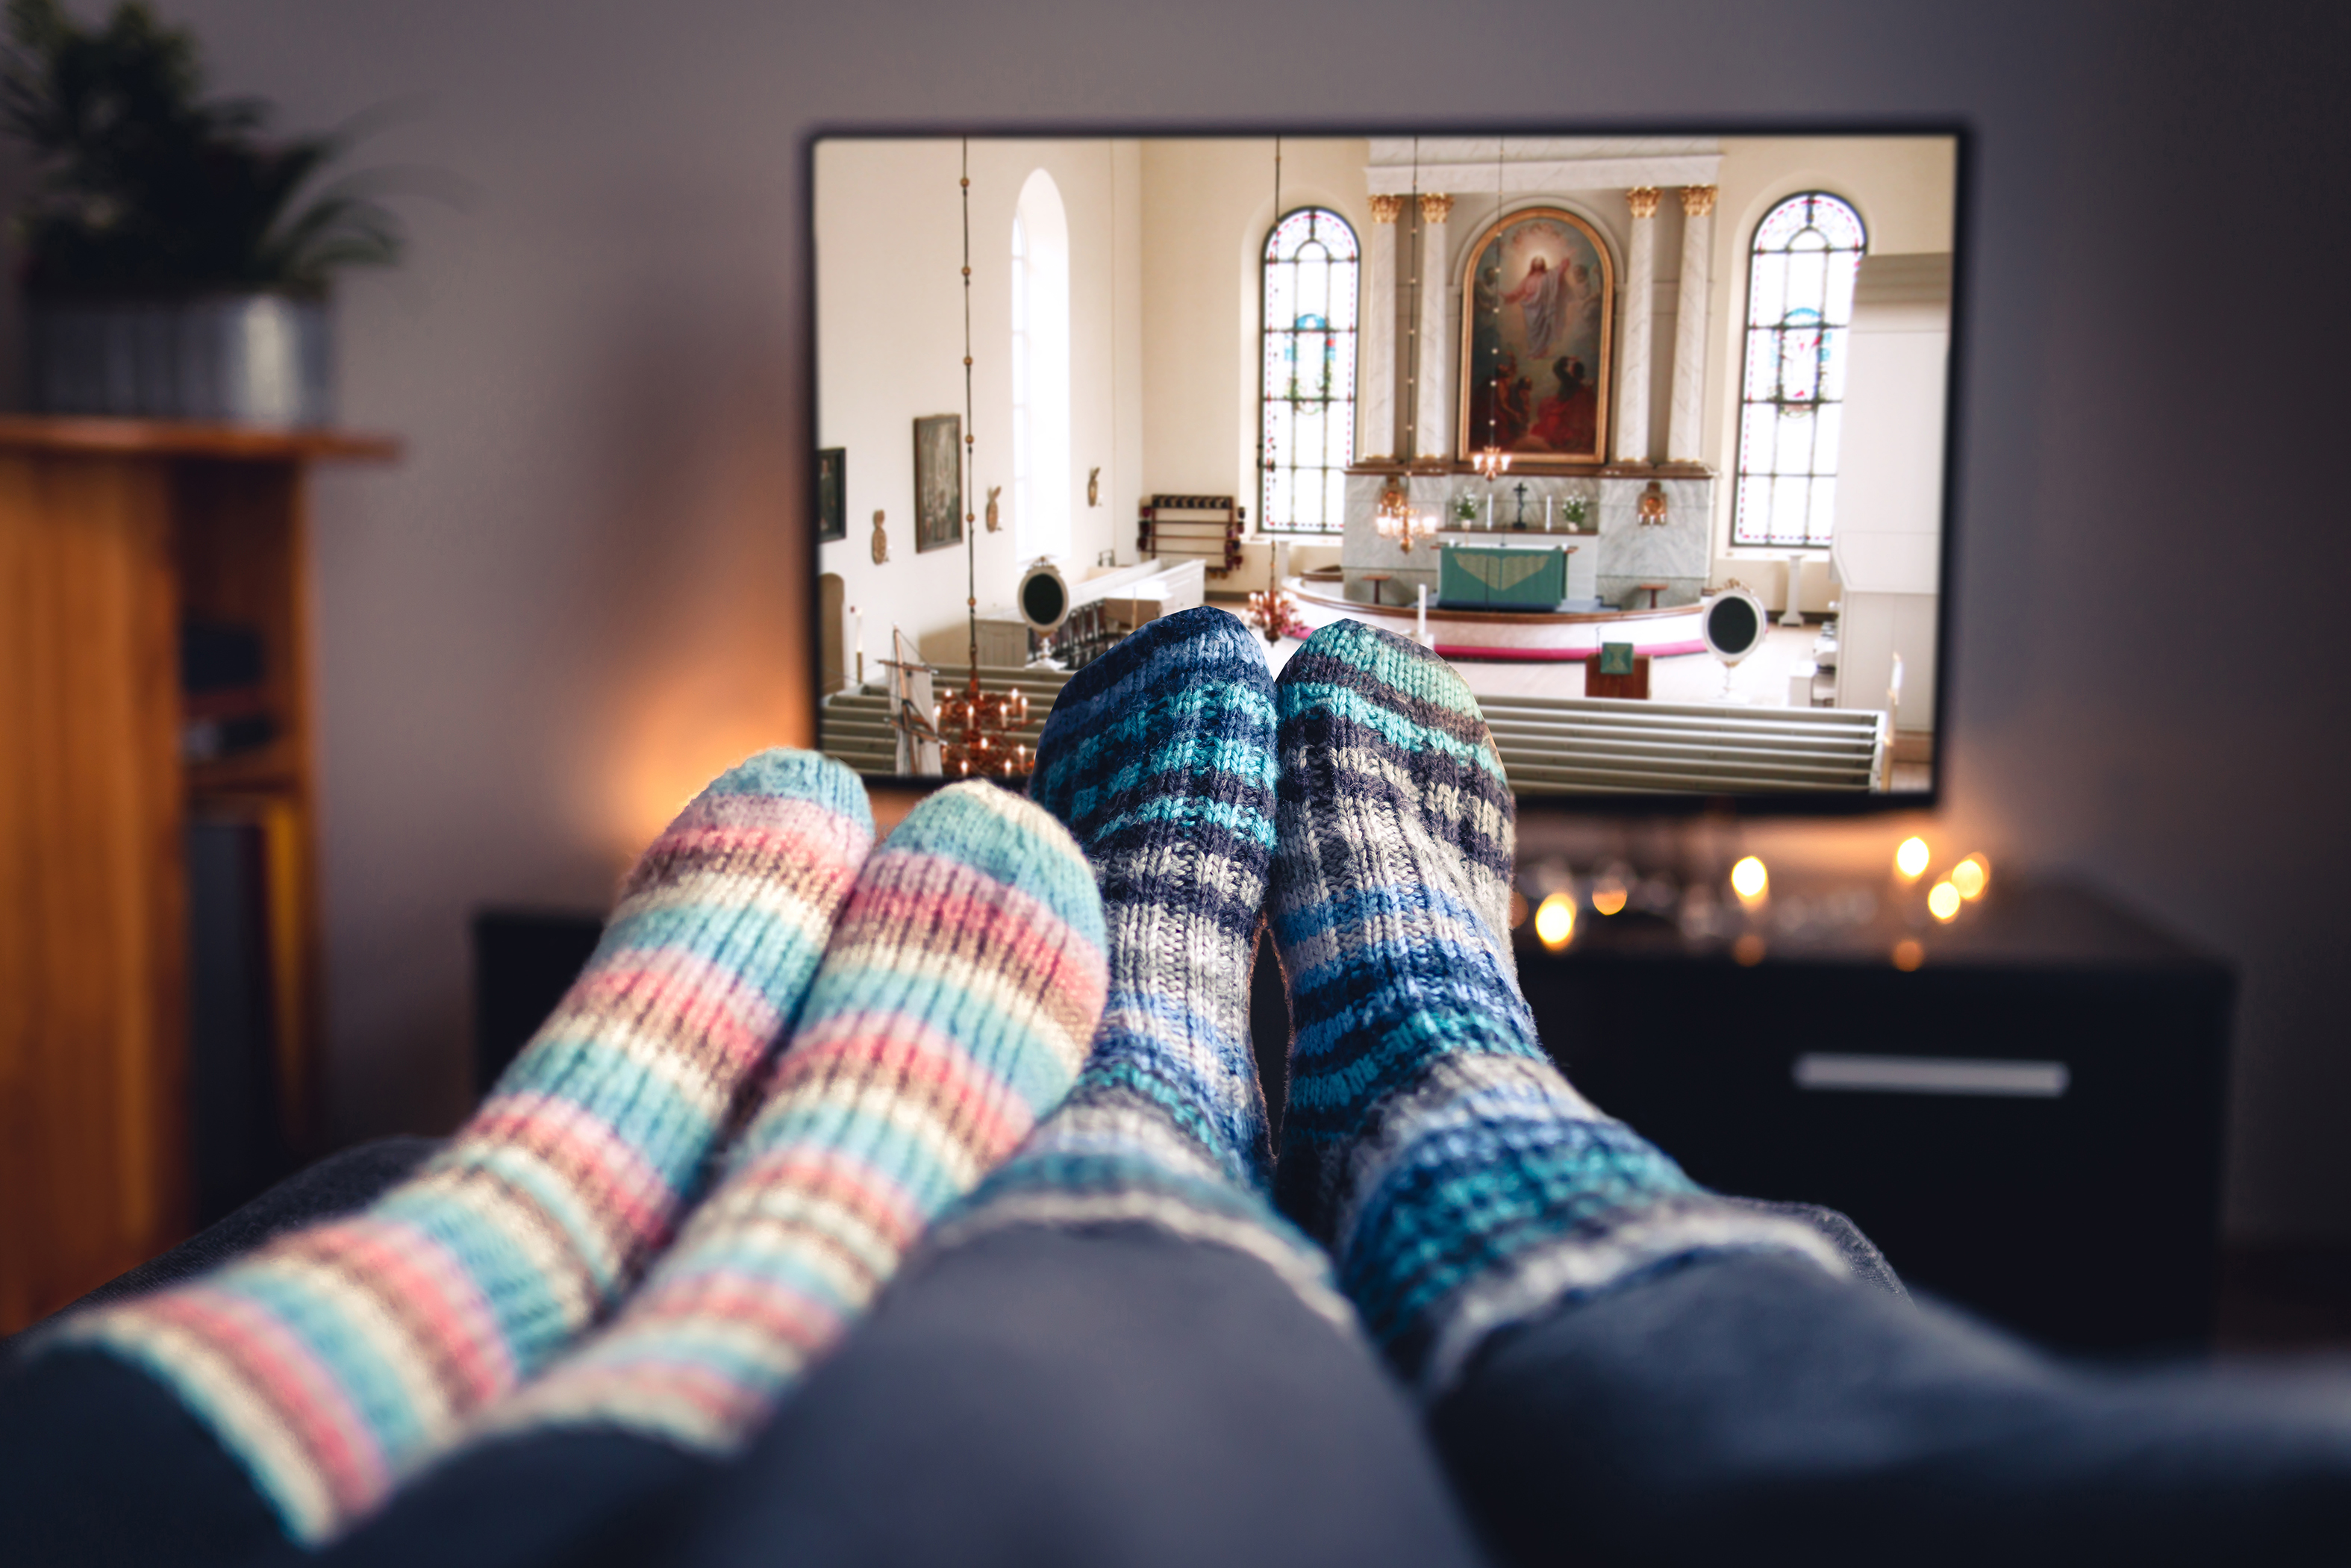 Ihmiset villasukkineen katsovat Virtuaalikirkkoa kotisohvalta. Kuva: Shutterstock  